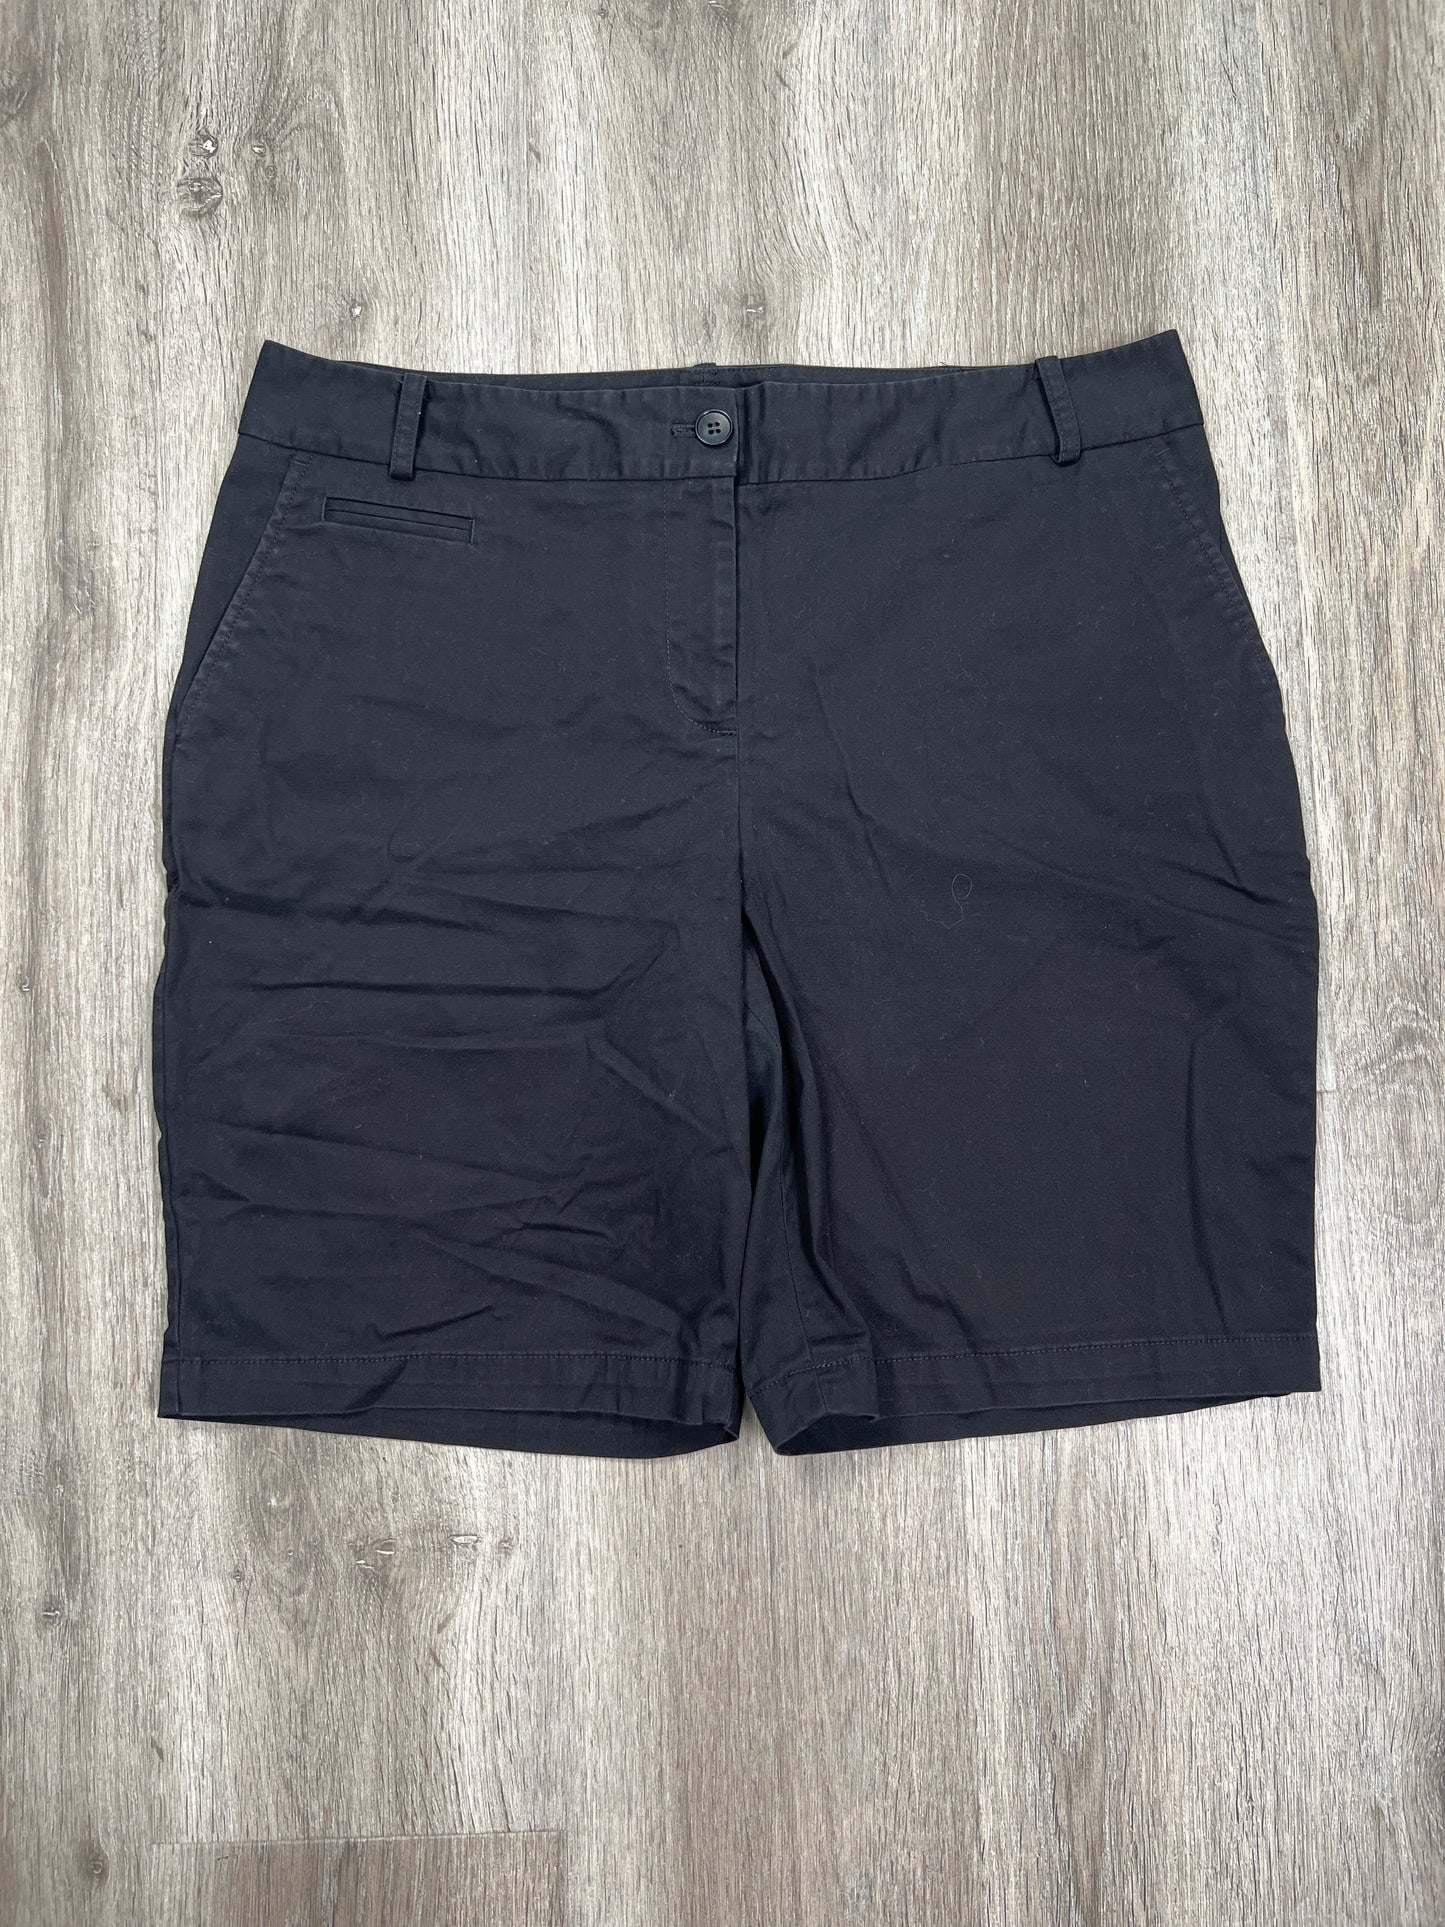 Black Shorts Talbots, Size M